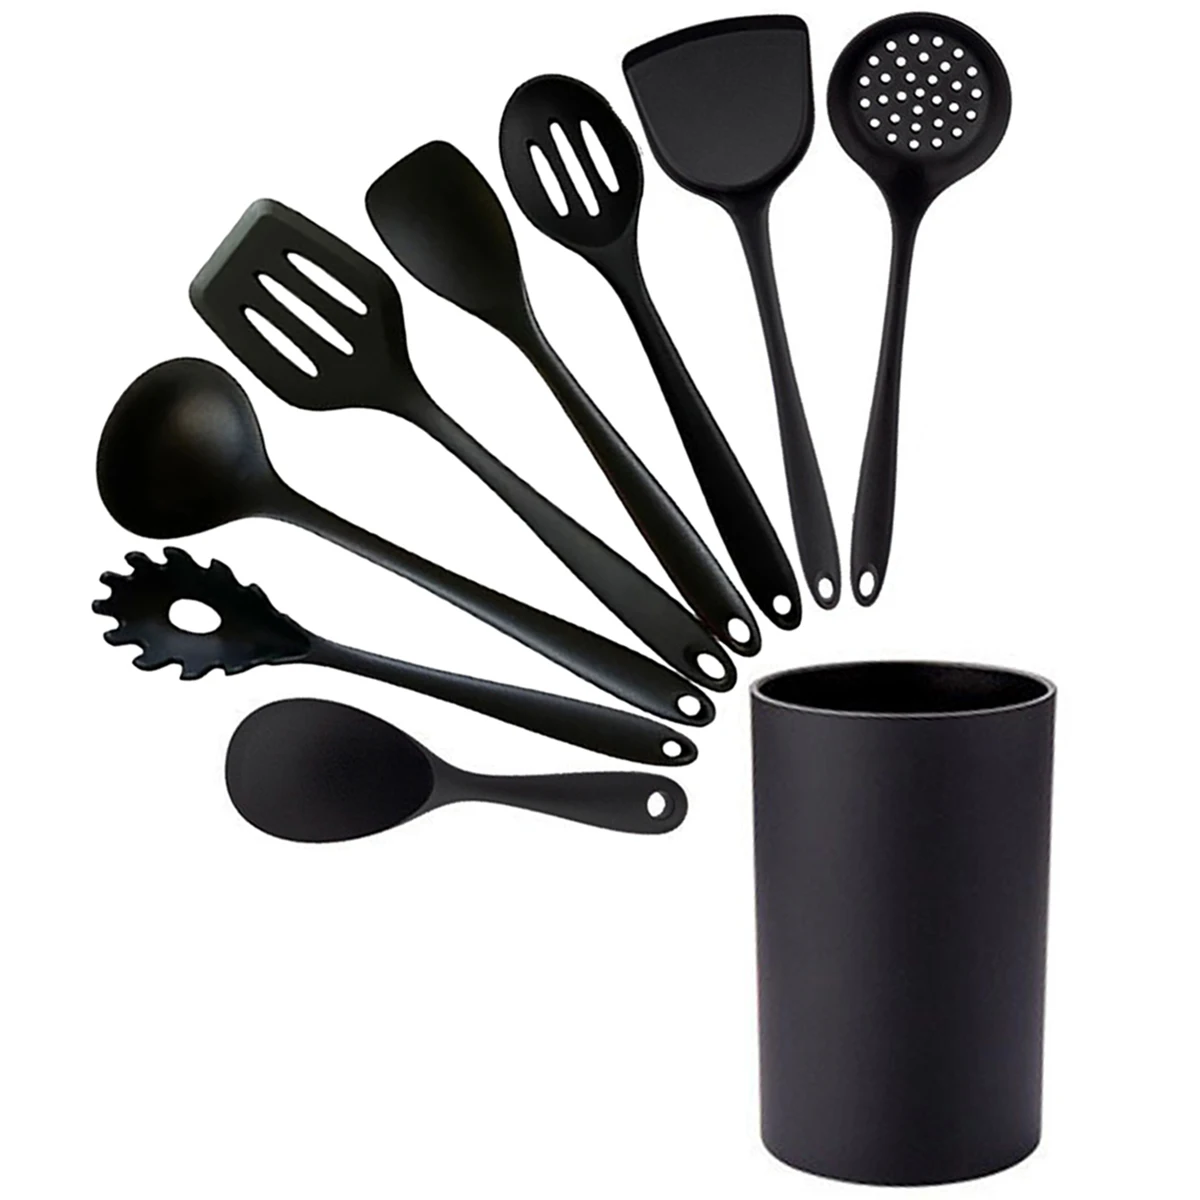 

Черный антипригарный кухонный инструмент, кухонная утварь, набор кухонной утвари, лопатка, ковш, венчик для яиц, лопатка, кухонные аксессуар...